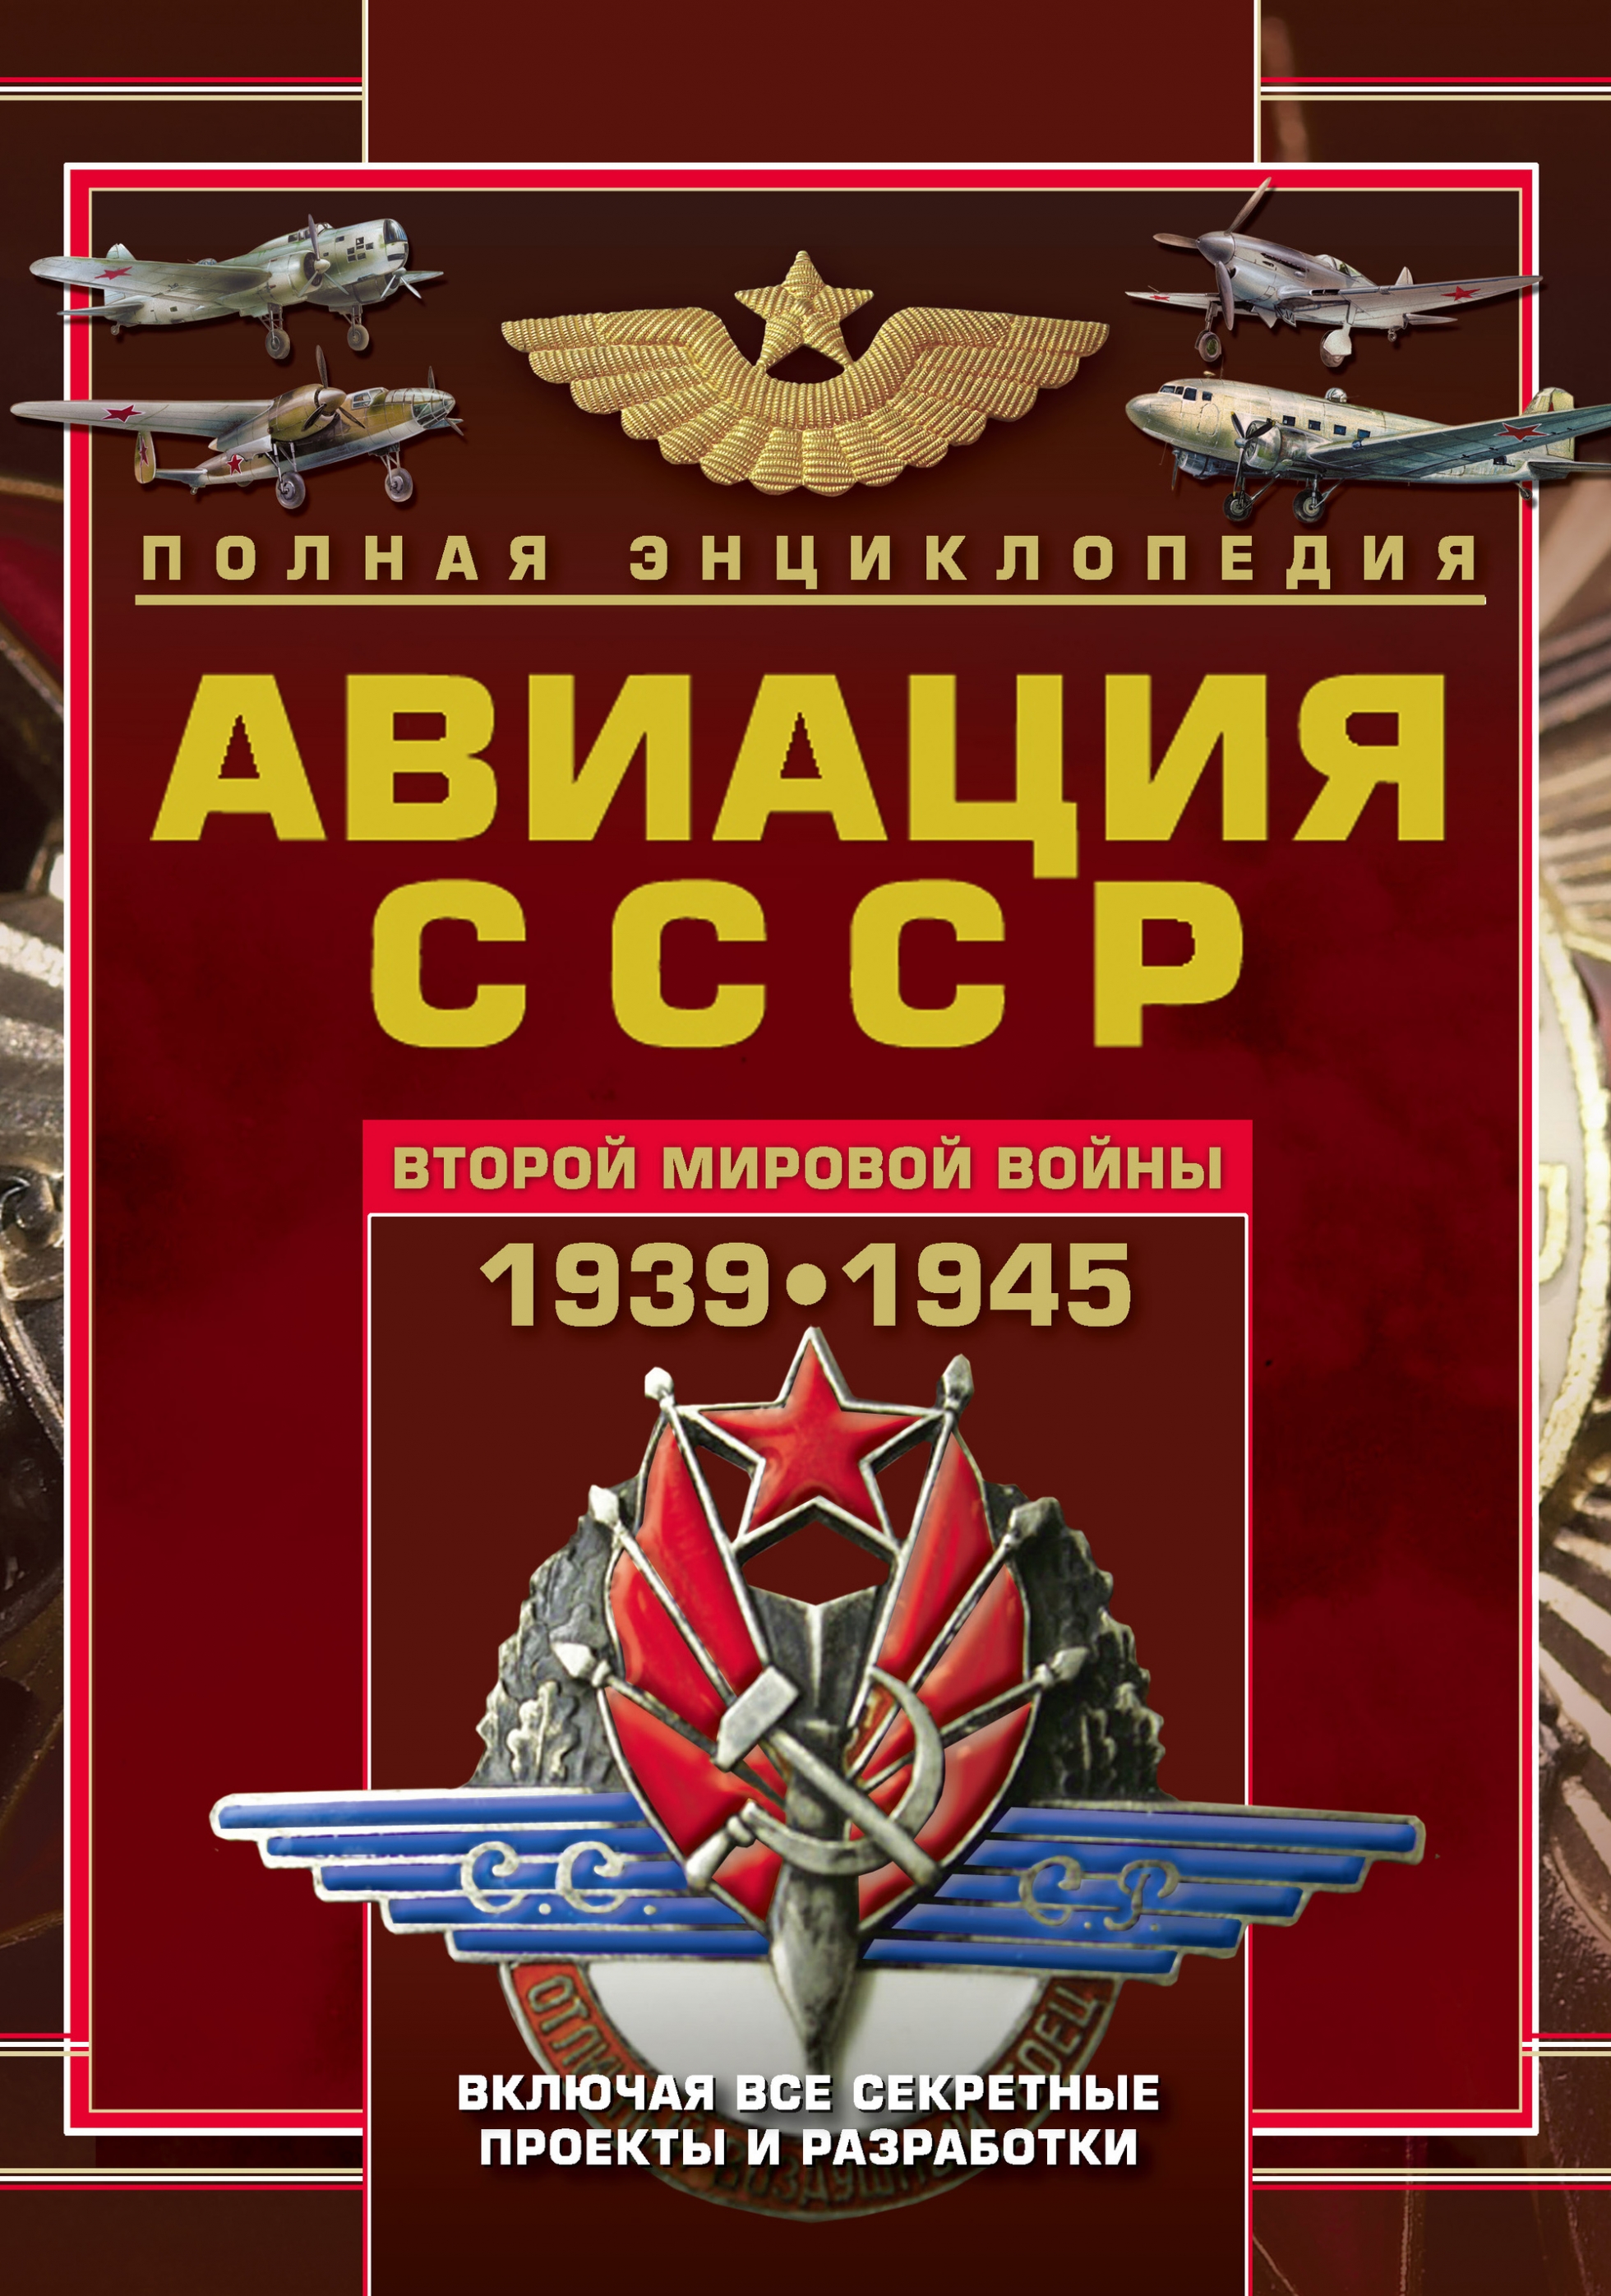  ..      1939-1945.       